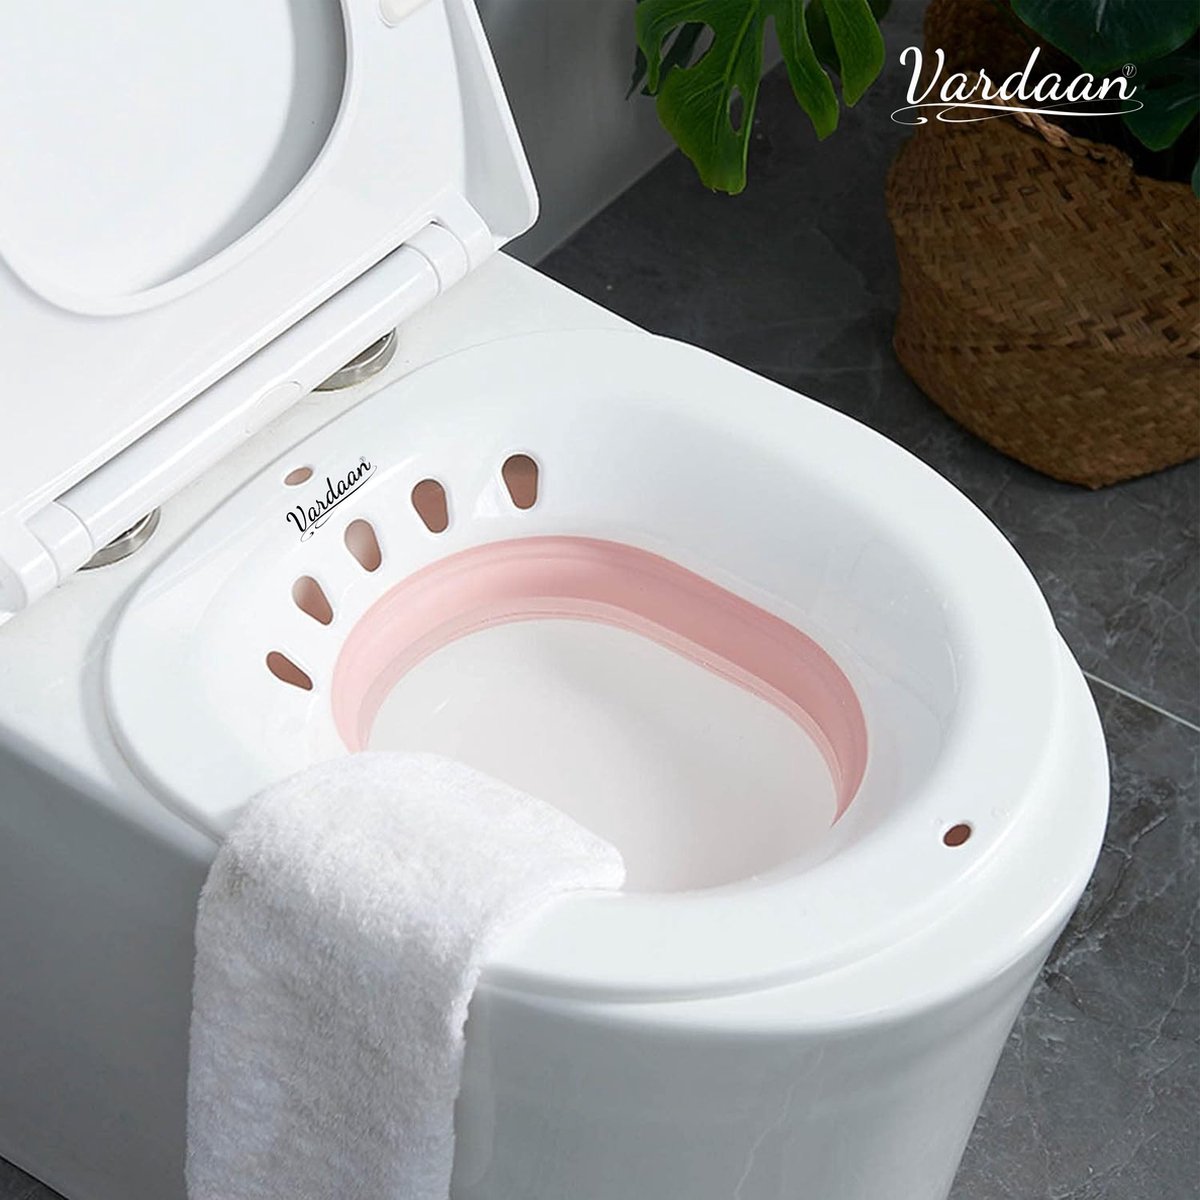 Vardaan Yoni Steam Chear - steam chair vaginal steaming - bidet - Foldable toilet seat - Vardaan Yoni Steam Chair -Yoni Stoomstoel- vaginaal stoombad -pink - Vardaan